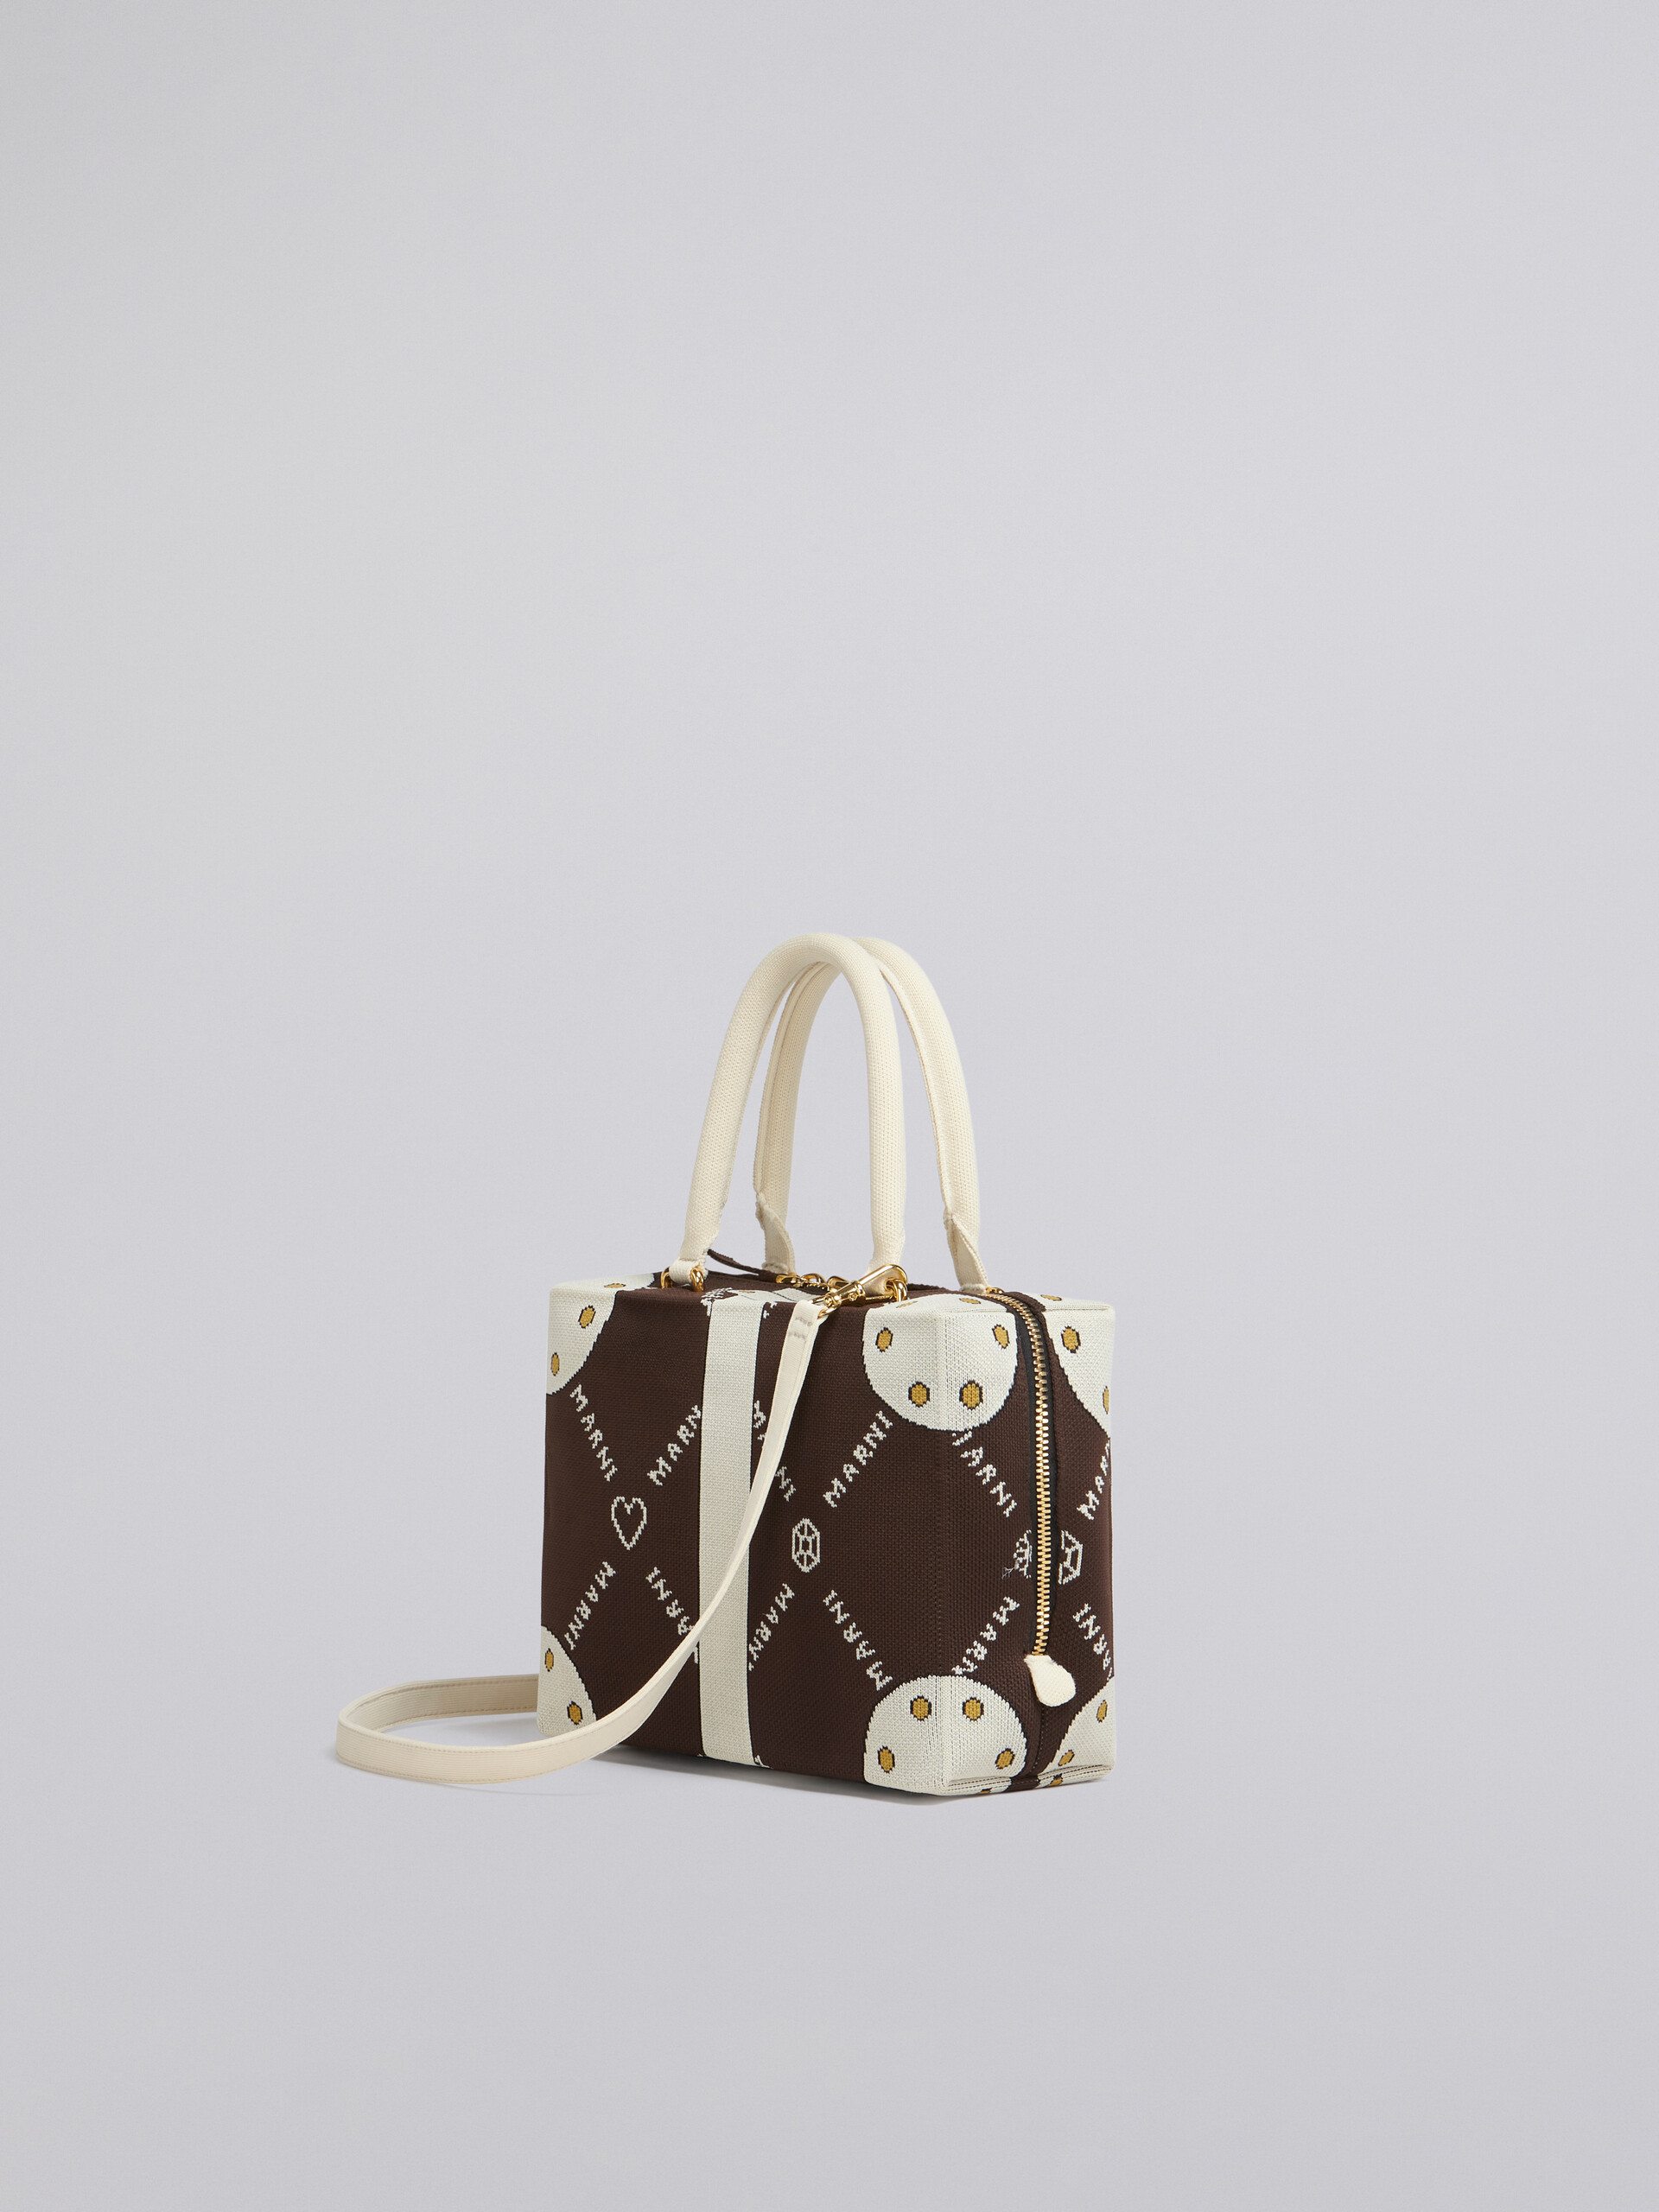 CUBIC bag in brown Marnigram trompe-l'œil jacquard - Handbag - Image 3